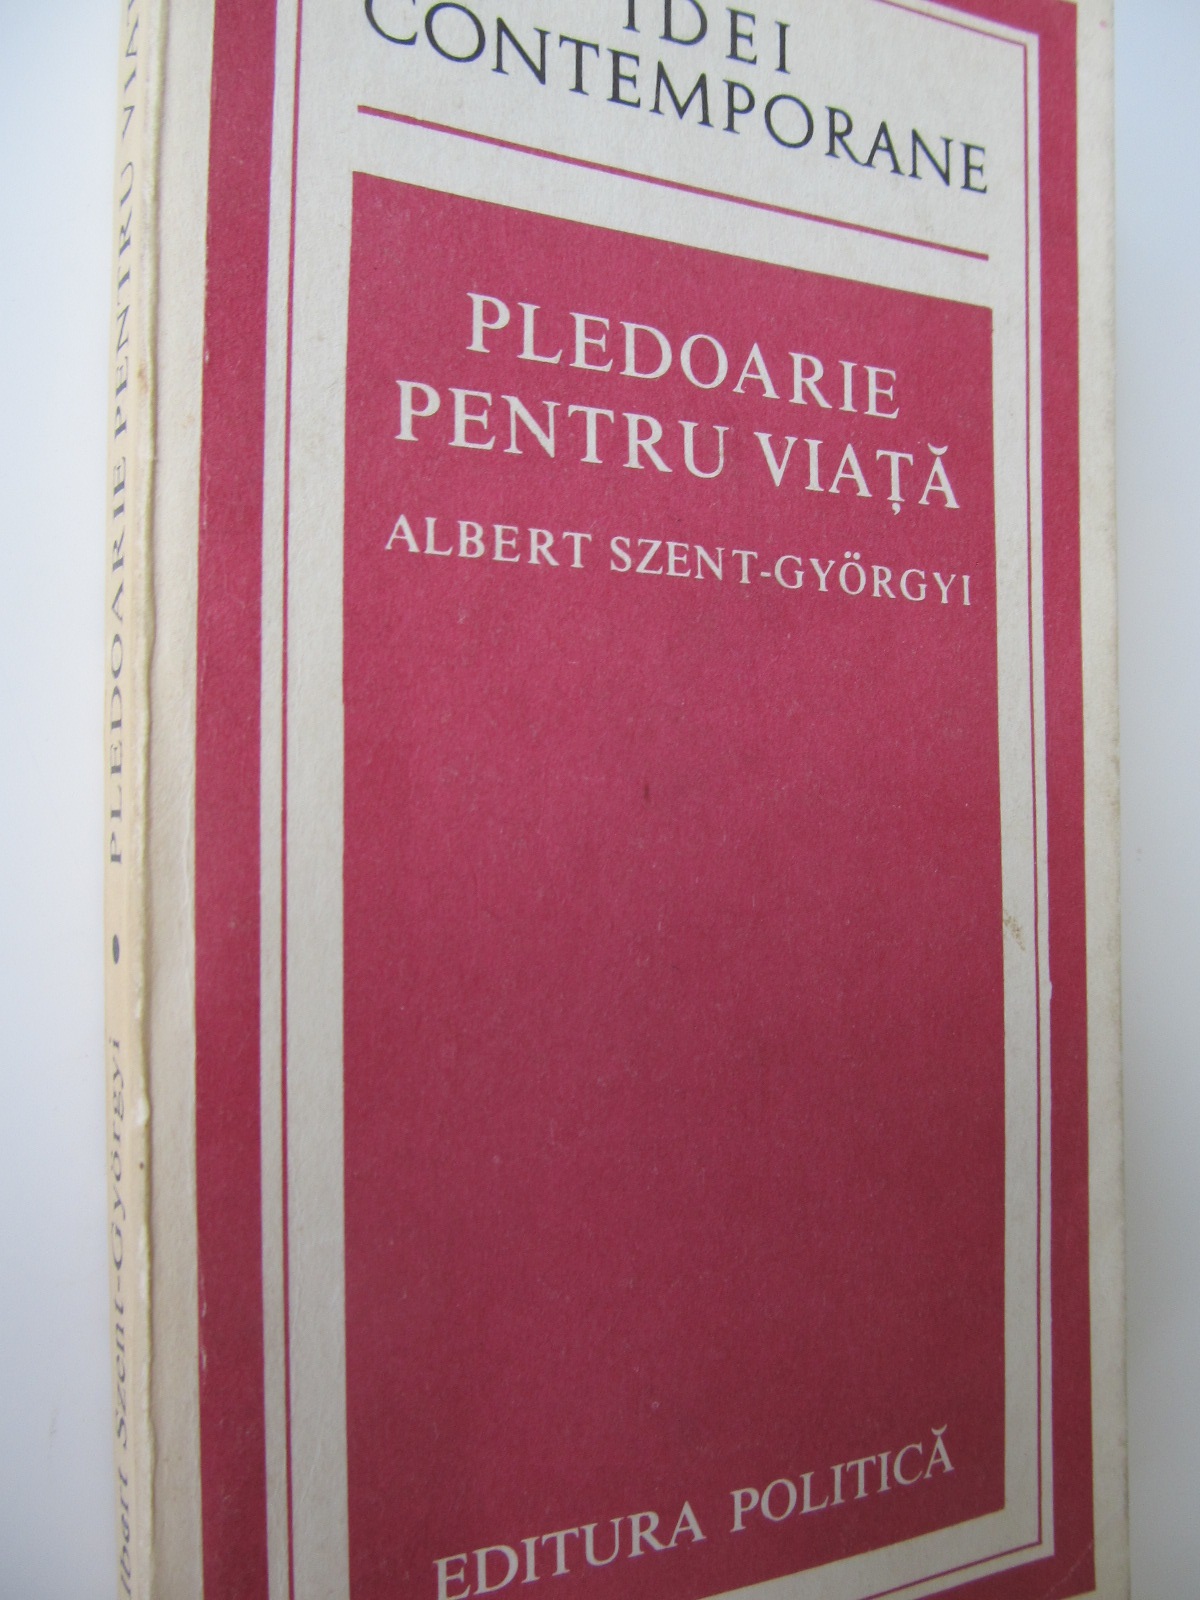 Pledoarie pentru viata - Albert Szent Gyorgyi | Detalii carte